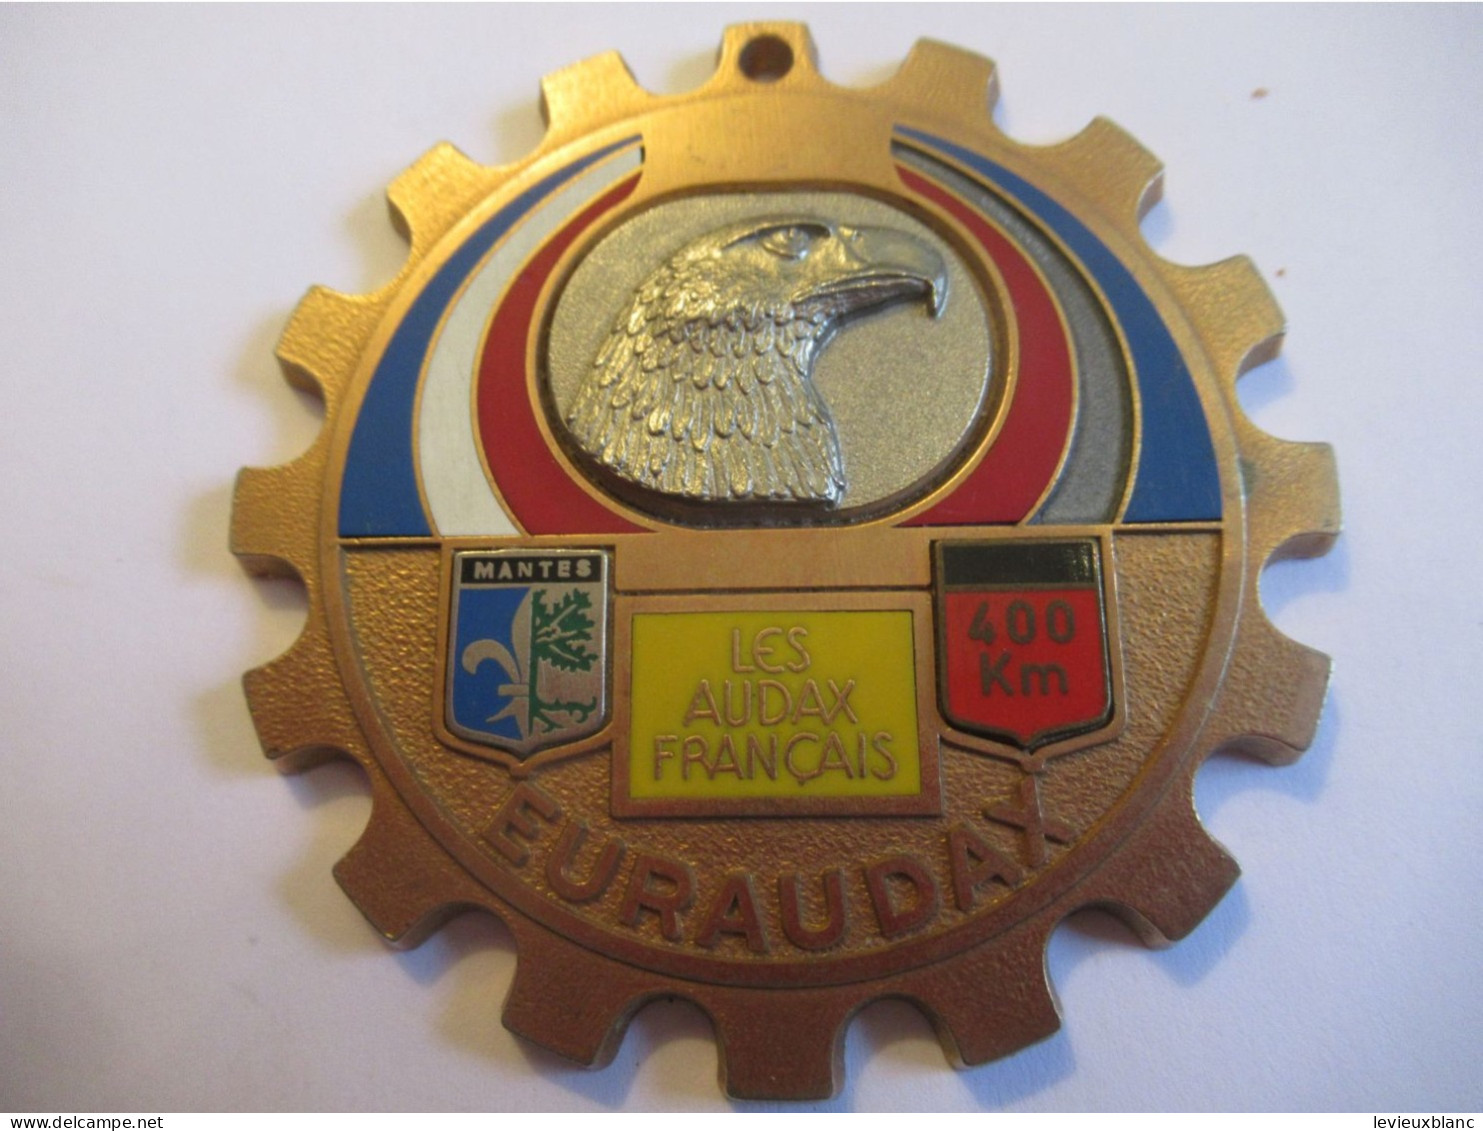 Bicyclette / EURAUDAX/Bronze Doré  Cloisonné/Les Audax Français/Tête D'Aigle/ Mantes/ 400 Km/1979     SPO436 - Wielrennen